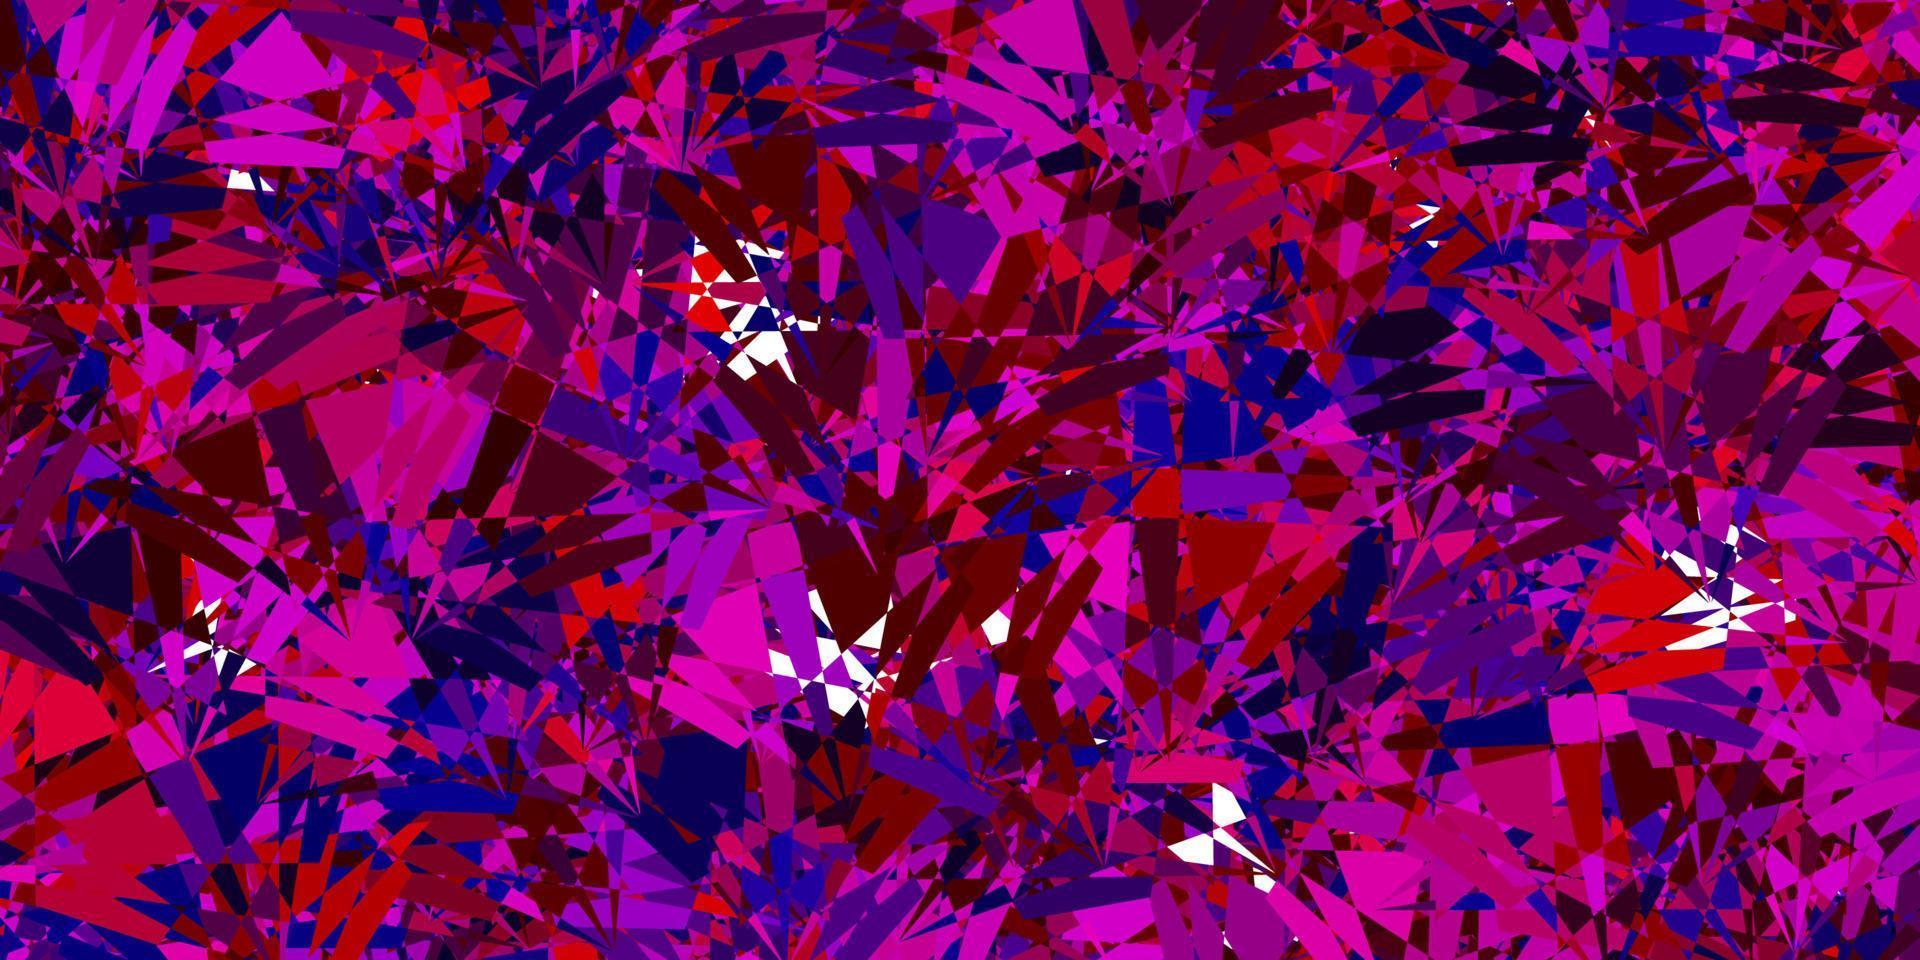 mörkblå, röd vektorbakgrund med trianglar. vektor